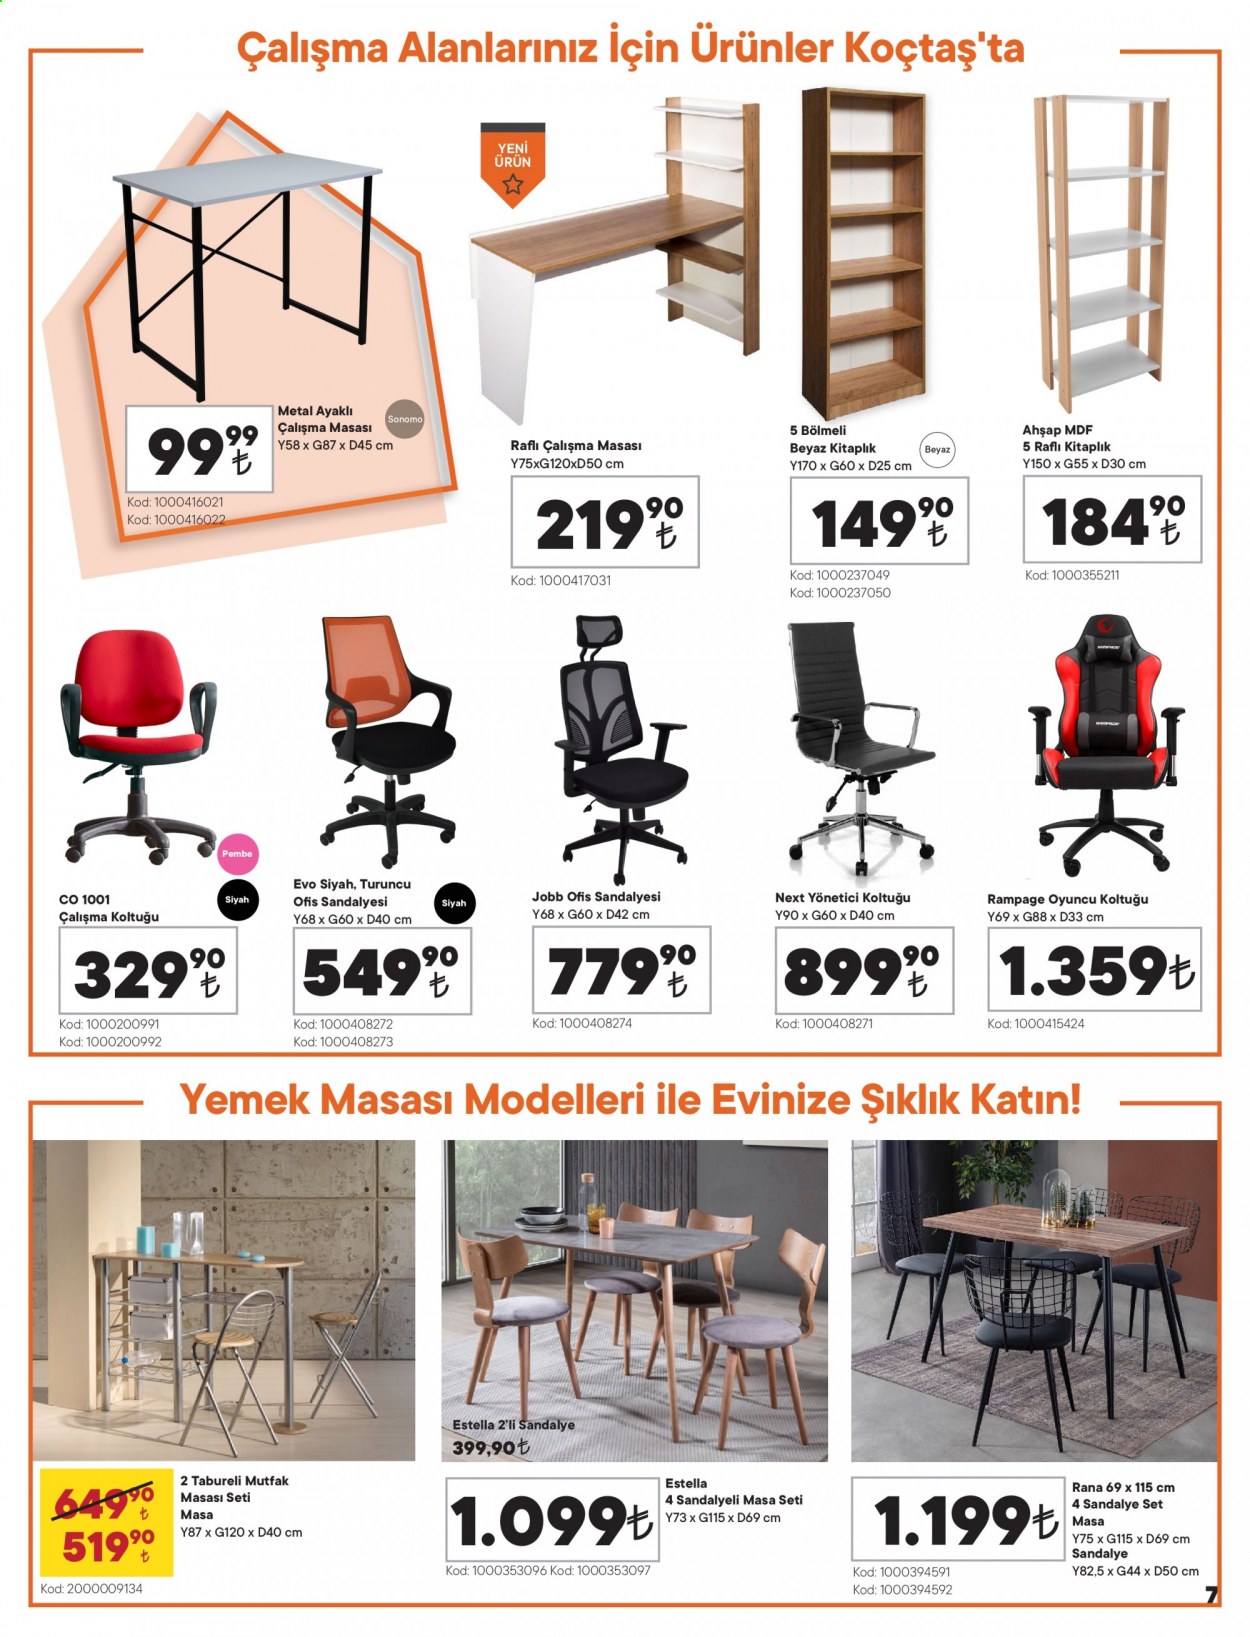 thumbnail - Koçtaş aktüel ürünler, broşür  - 2.4.2021 - 3.10.2021 - Satıştaki ürünler - çalışma masası, masa, yemek masası, mutfak masası, kitaplık, oyun koltuğu, ofis sandalyesi. Sayfa 7.